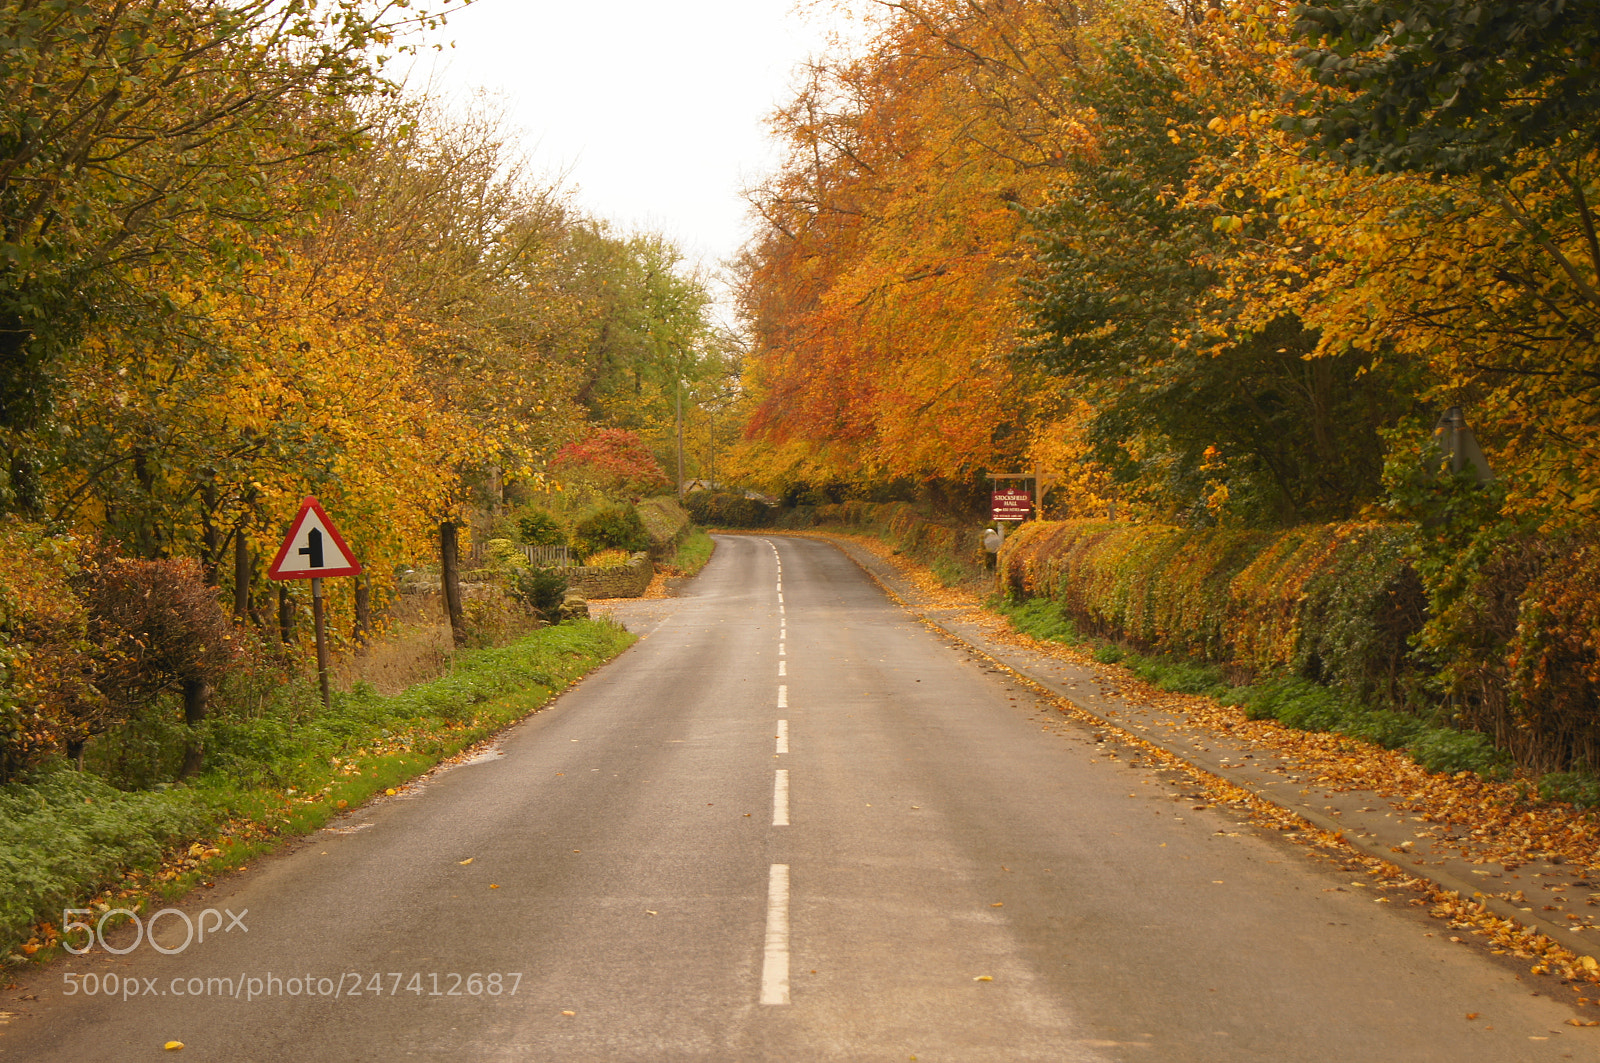 Sony SLT-A55 (SLT-A55V) sample photo. Autumn road near hadrian's photography